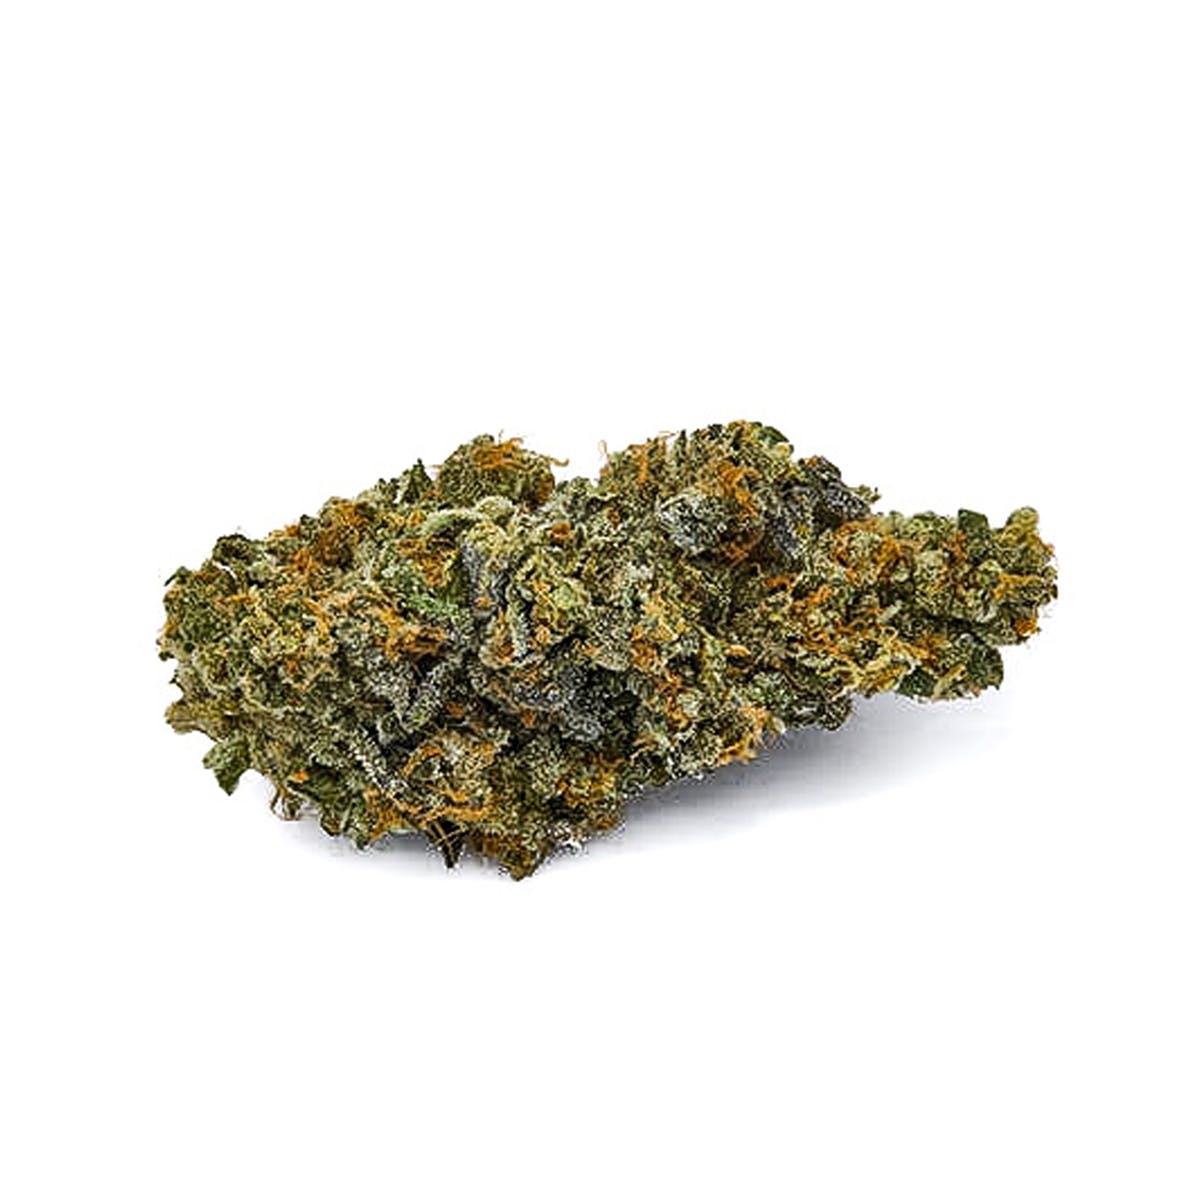 marijuana-dispensaries-reef-dispensaries-phoenix-in-phoenix-nigerian-mint